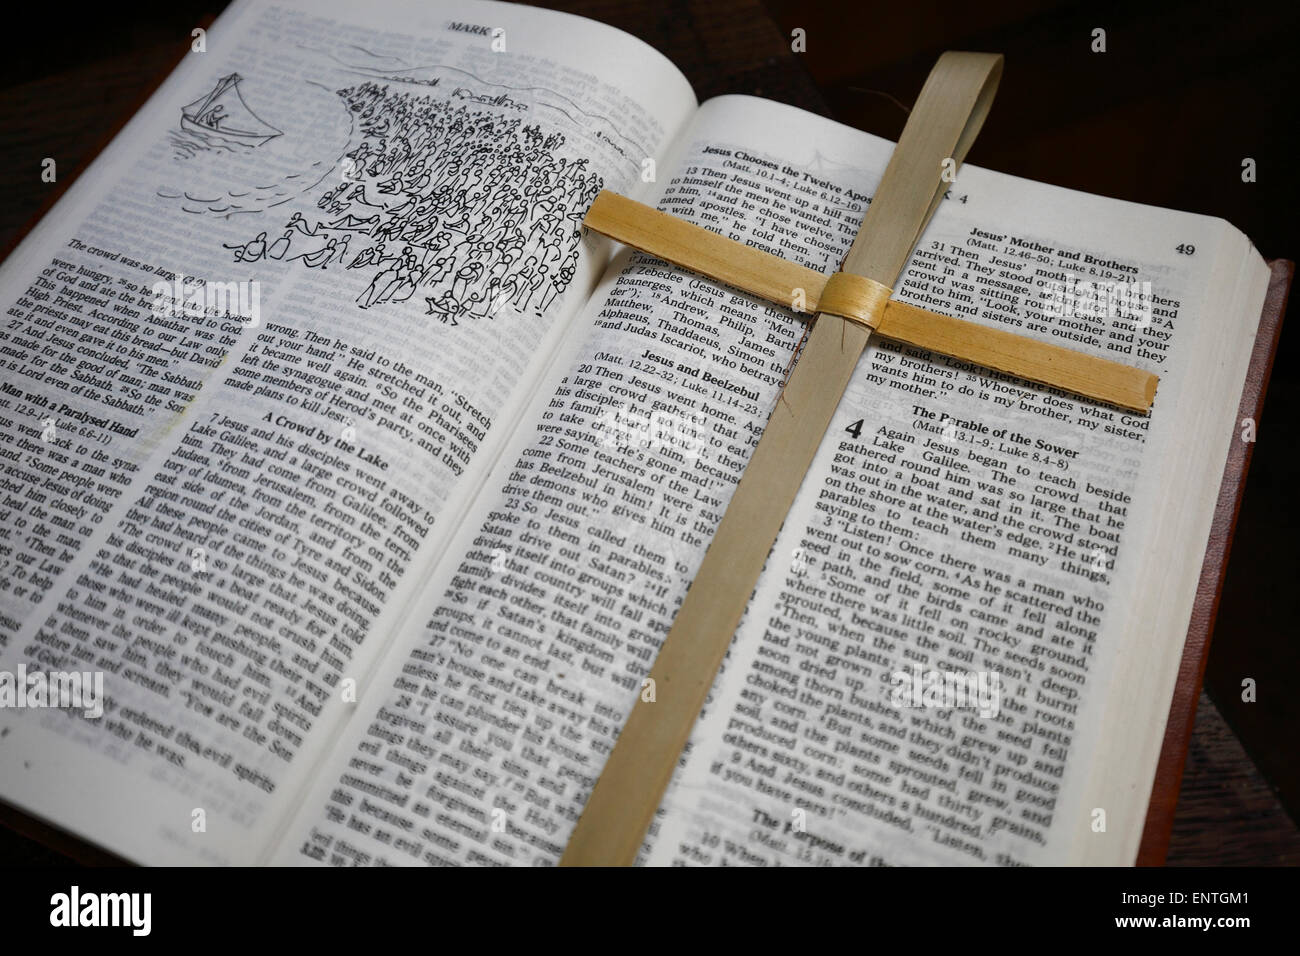 An open bible with a cross seen inside a parish church. Stock Photo